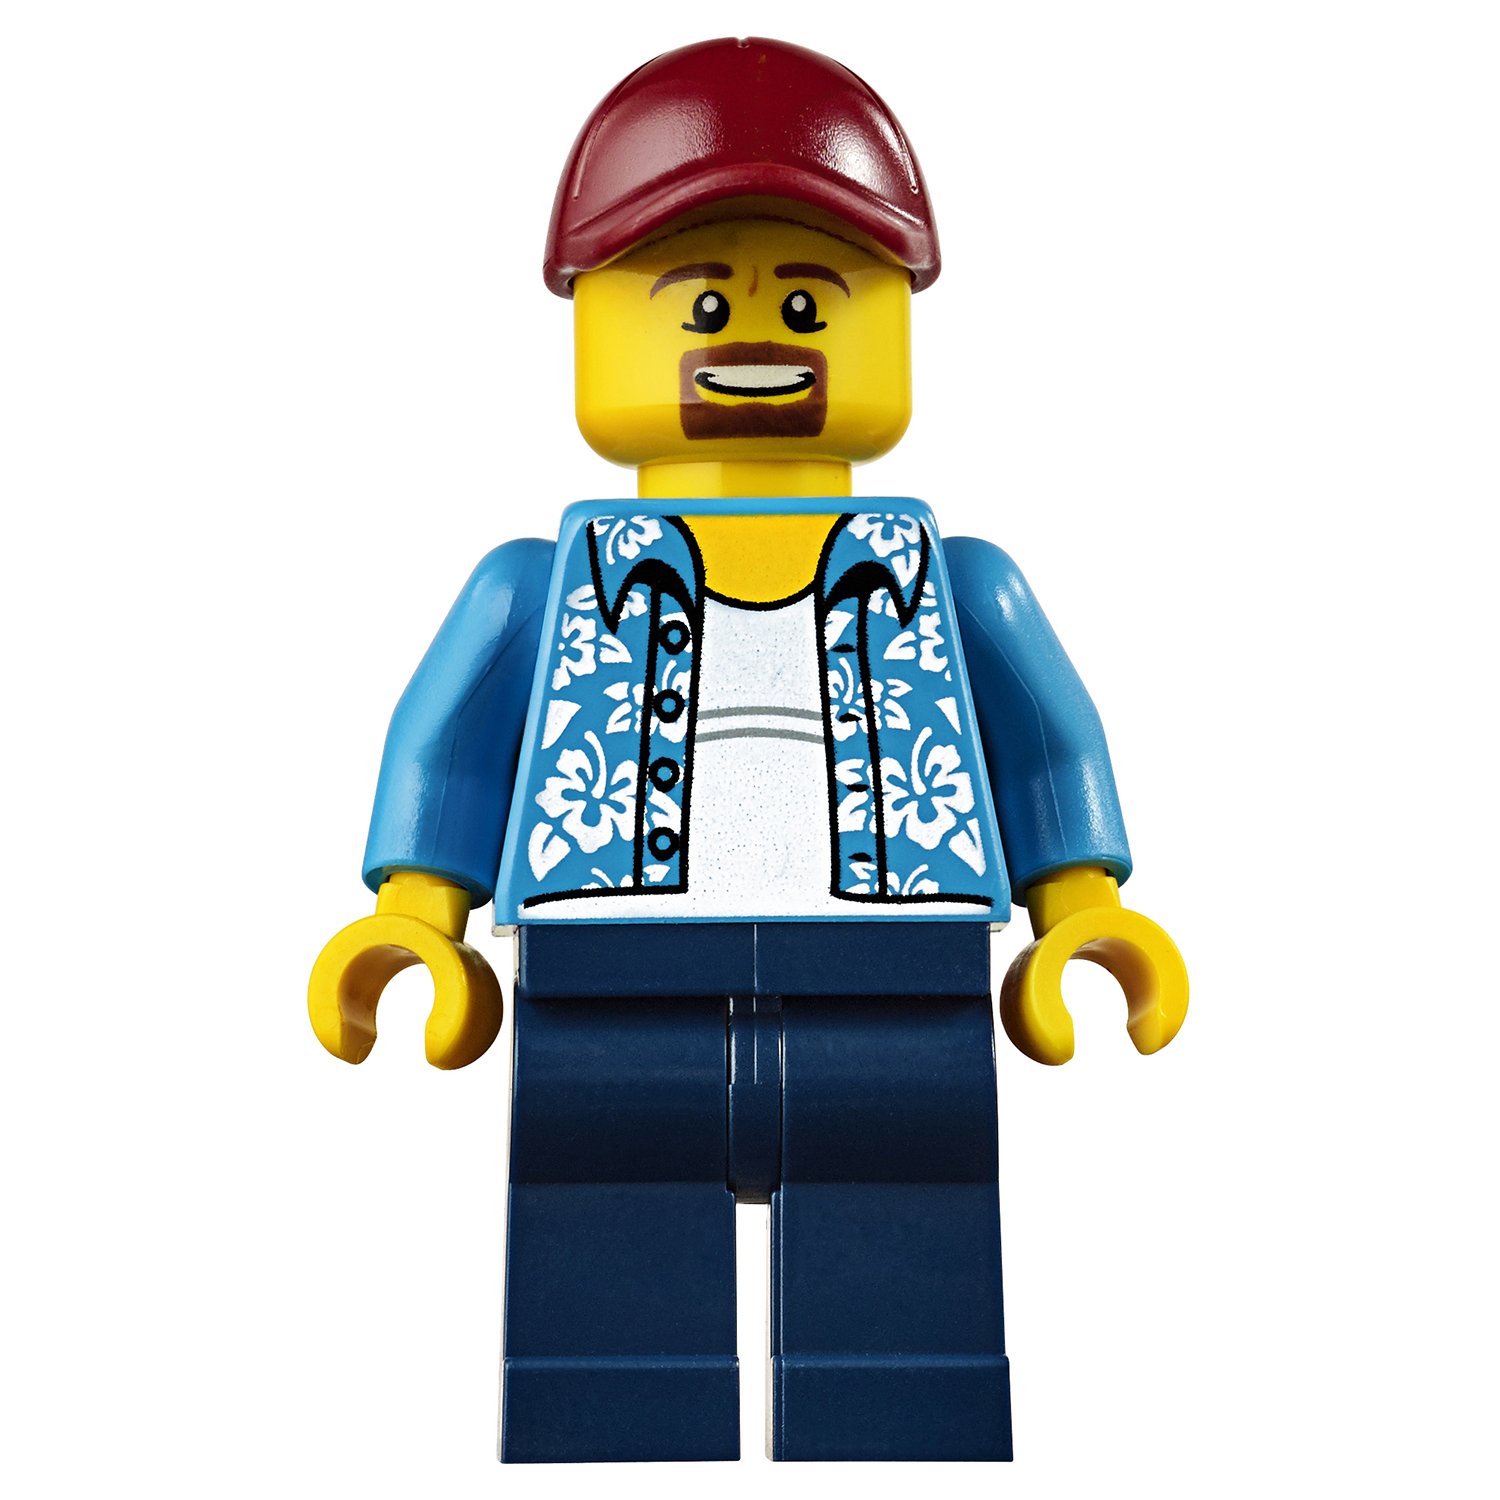 Конструктор Lego®  Криэйтор - Зоомагазин и кафе в центре города  